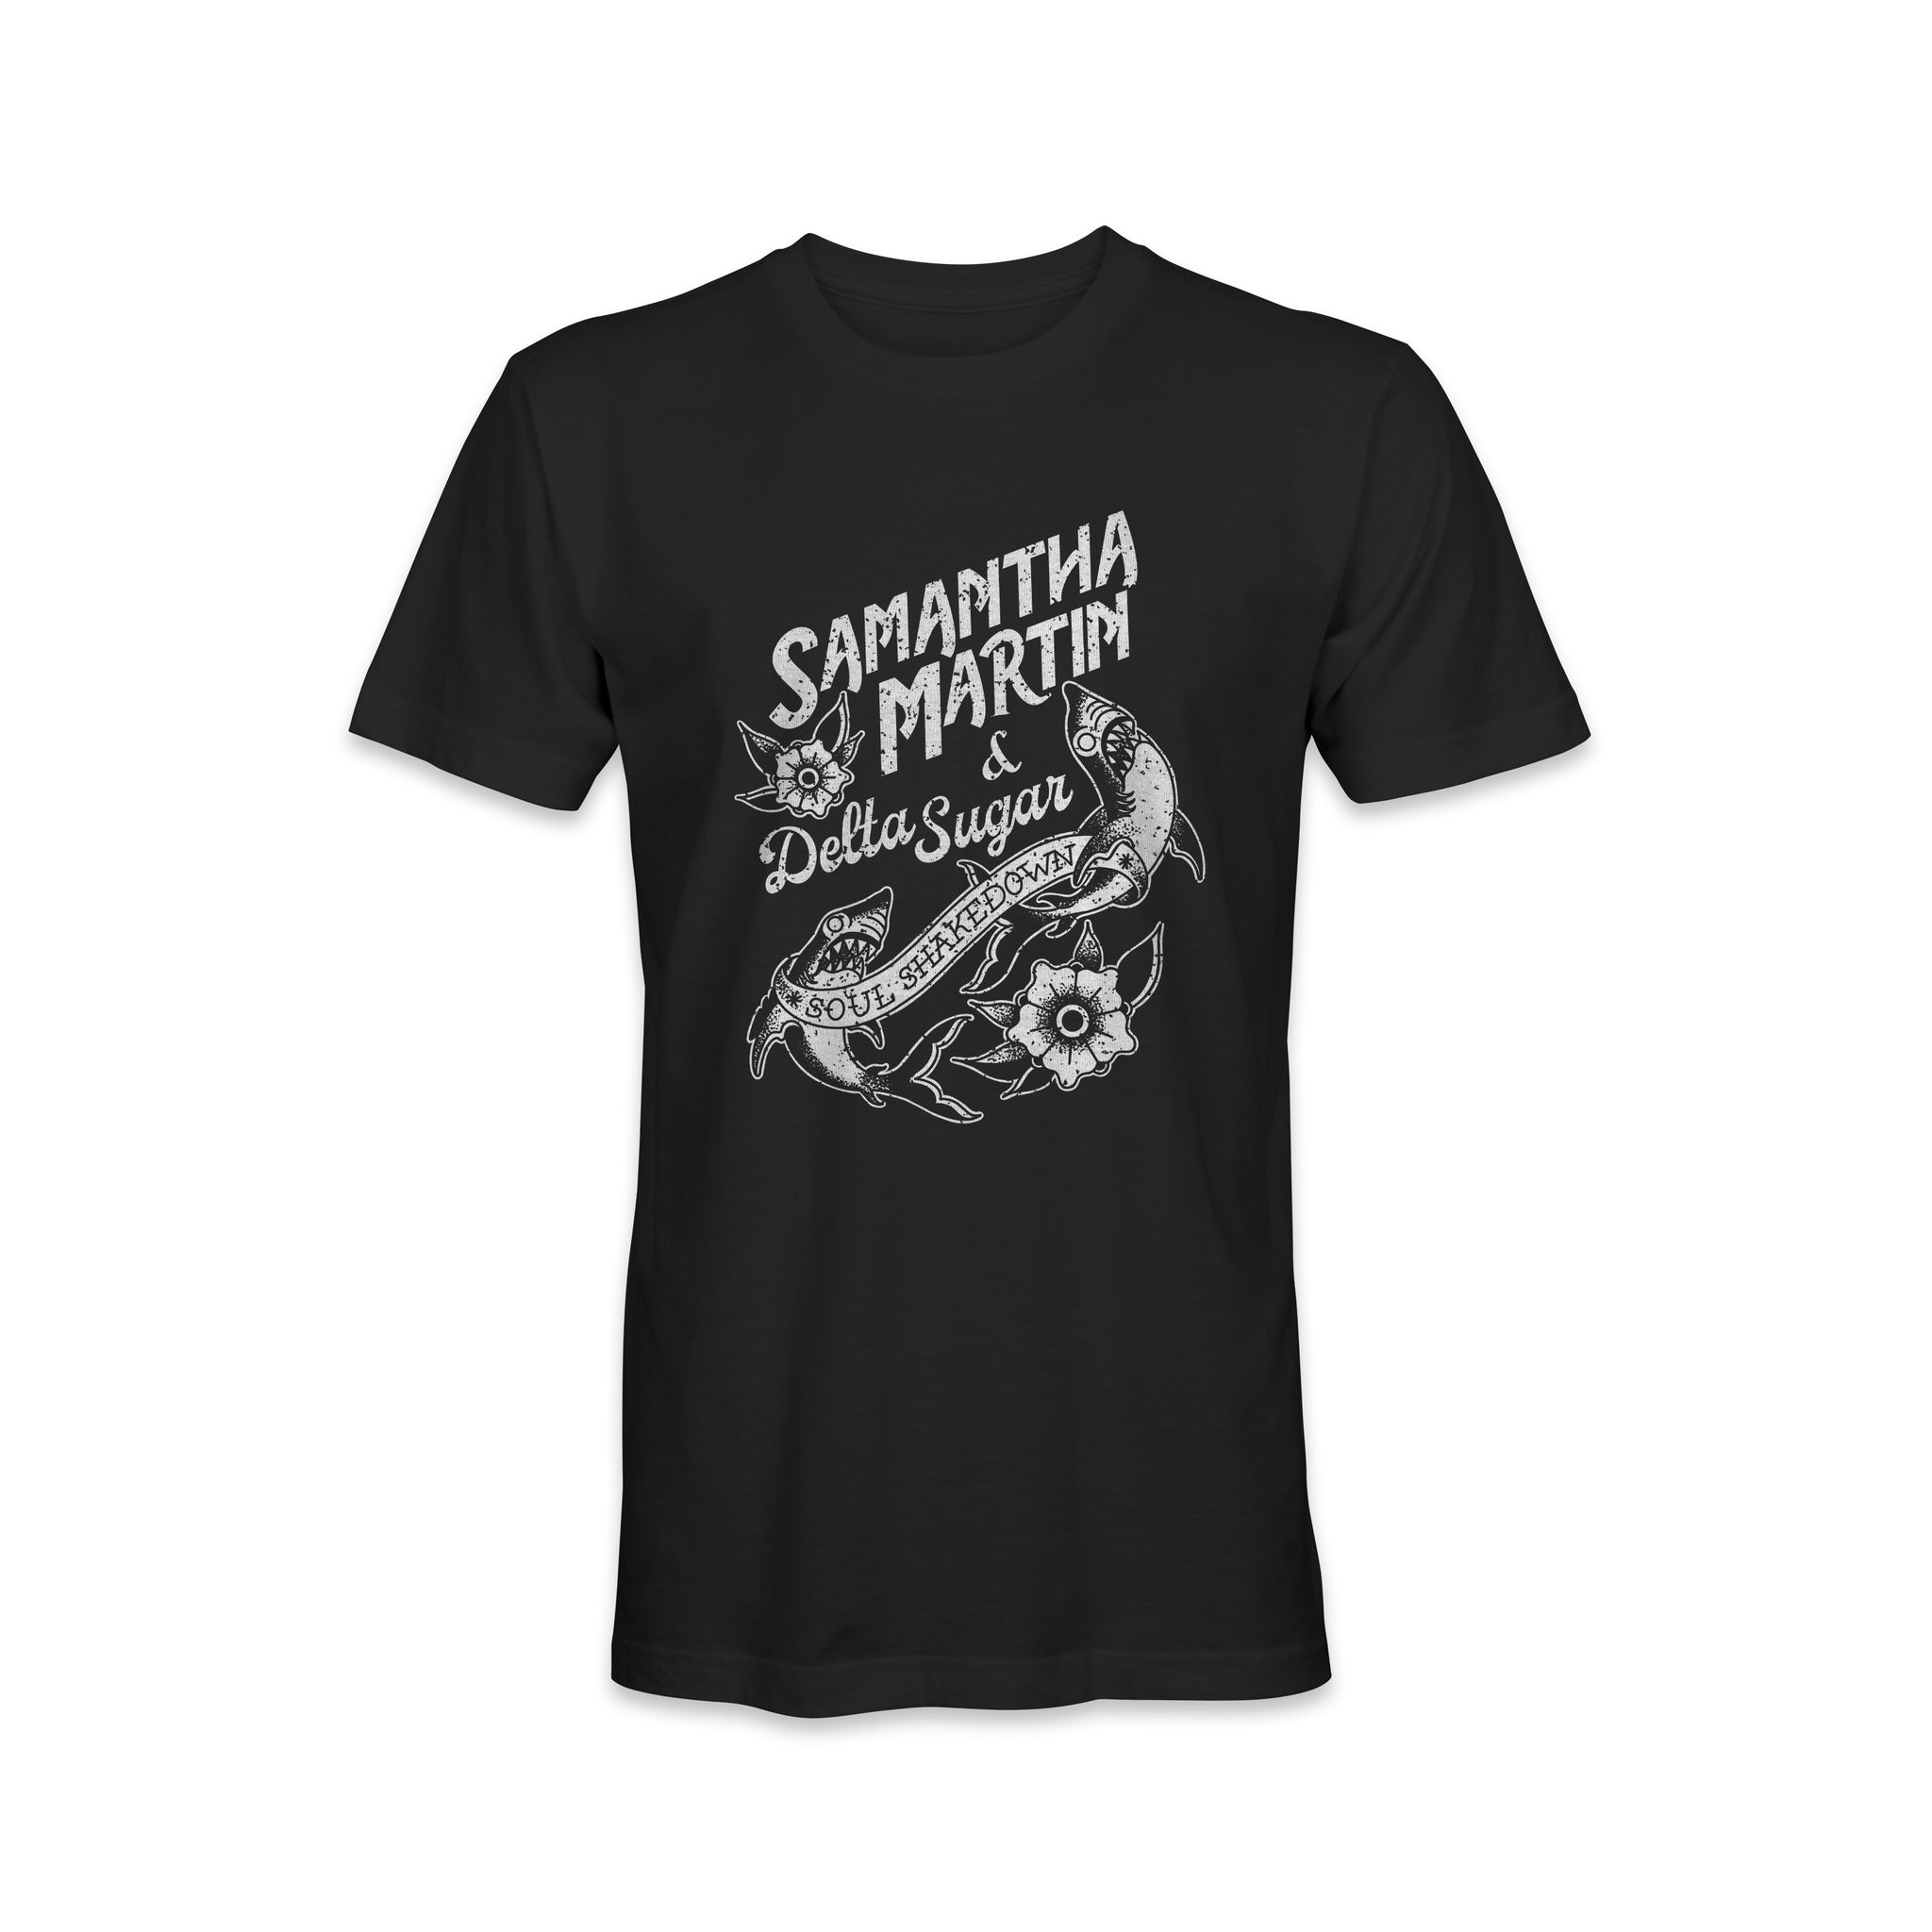 Samantha Martin & Delta Sugar "Shark" T-shirt